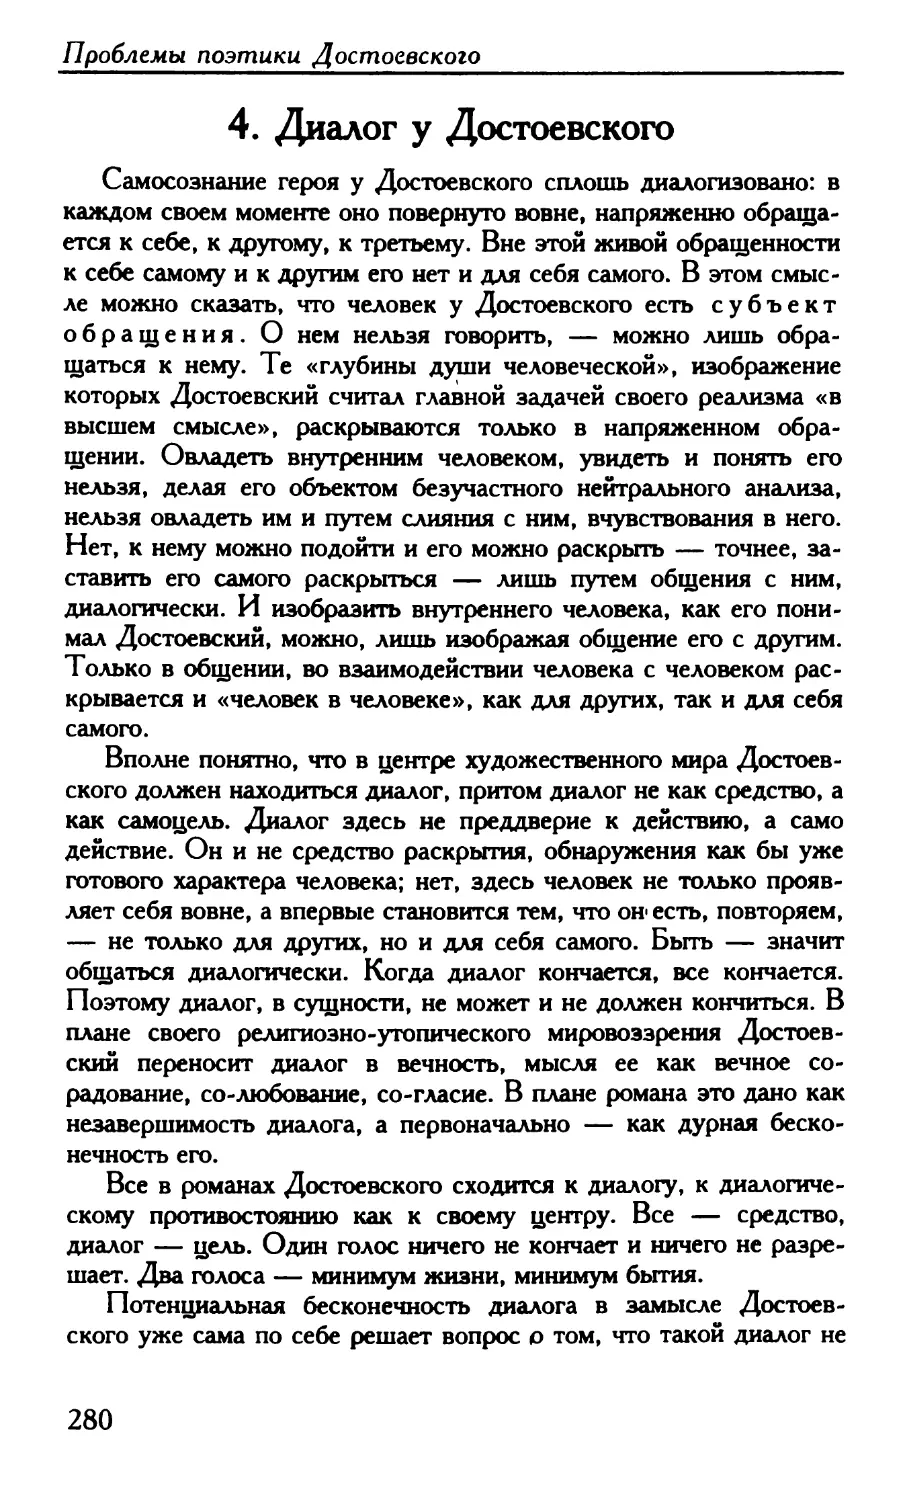 4. Диалог у Достоевского